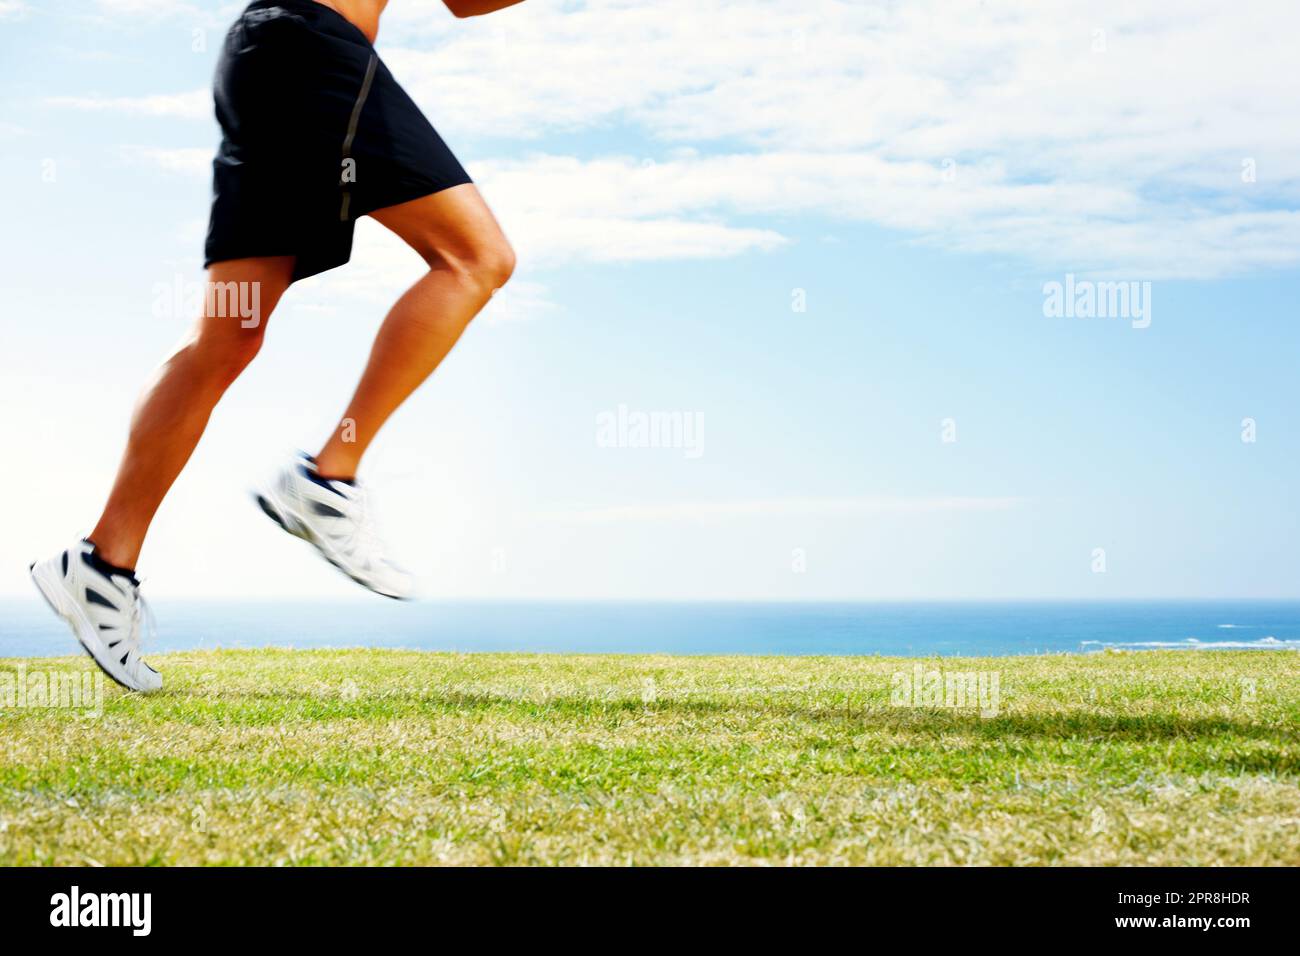 Junger Mann joggt auf dem Gras gegen den Himmel - Outdoor. Zugeschnittenes Bild eines jungen Mannes, der auf dem grünen Gras gegen den Himmel joggt. Stockfoto